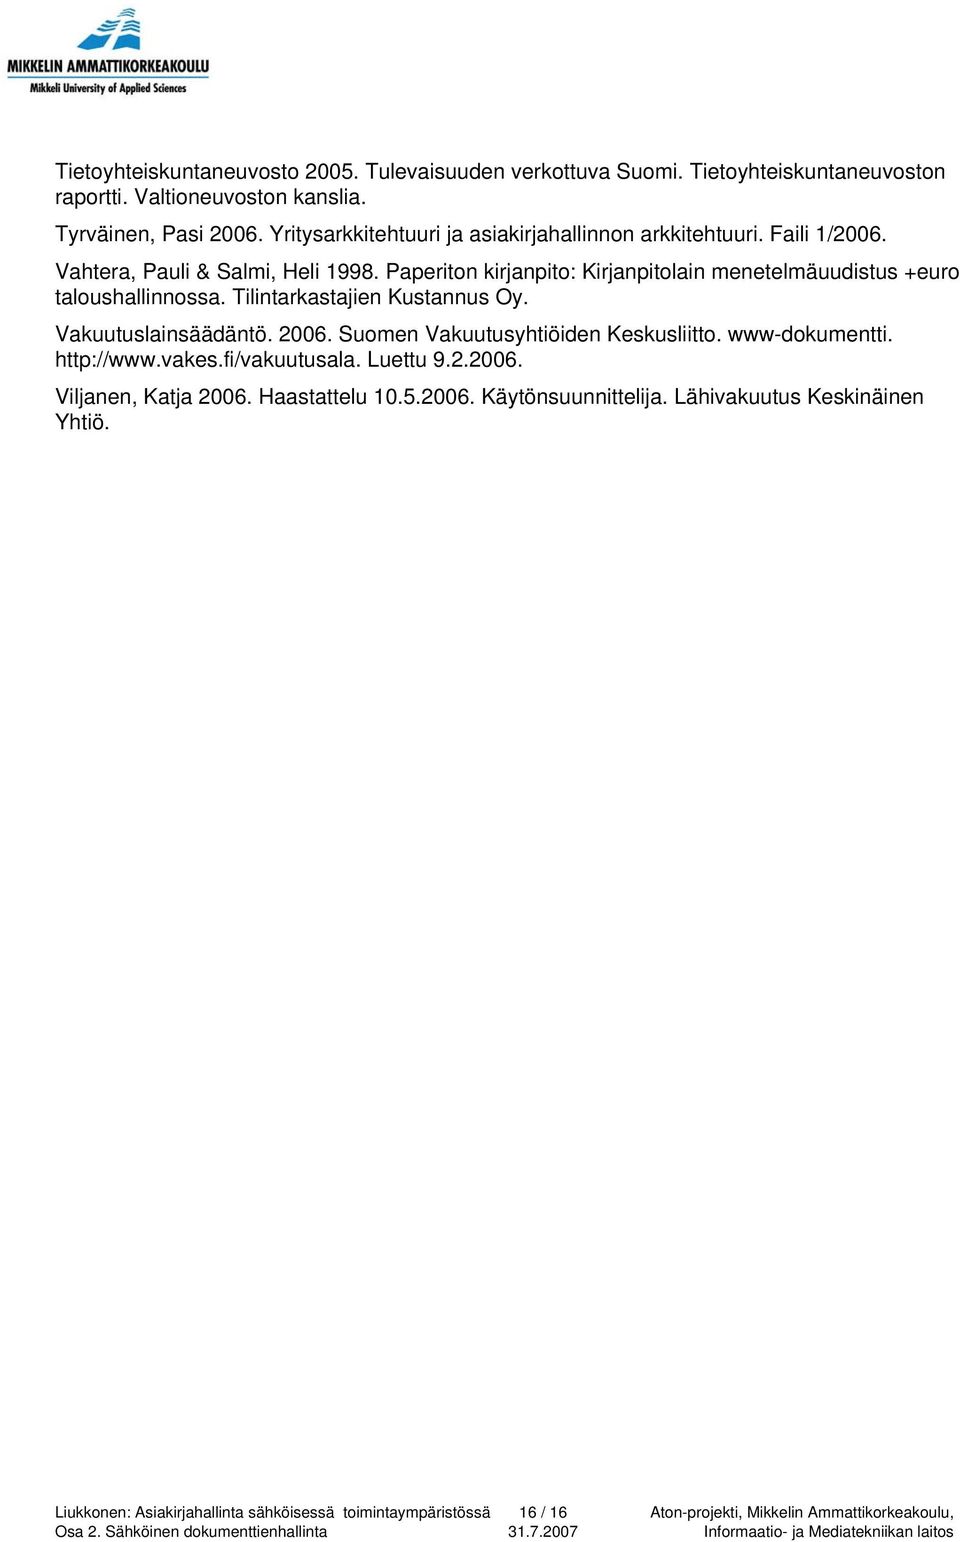 Paperiton kirjanpito: Kirjanpitolain menetelmäuudistus +euro taloushallinnossa. Tilintarkastajien Kustannus Oy. Vakuutuslainsäädäntö. 2006.